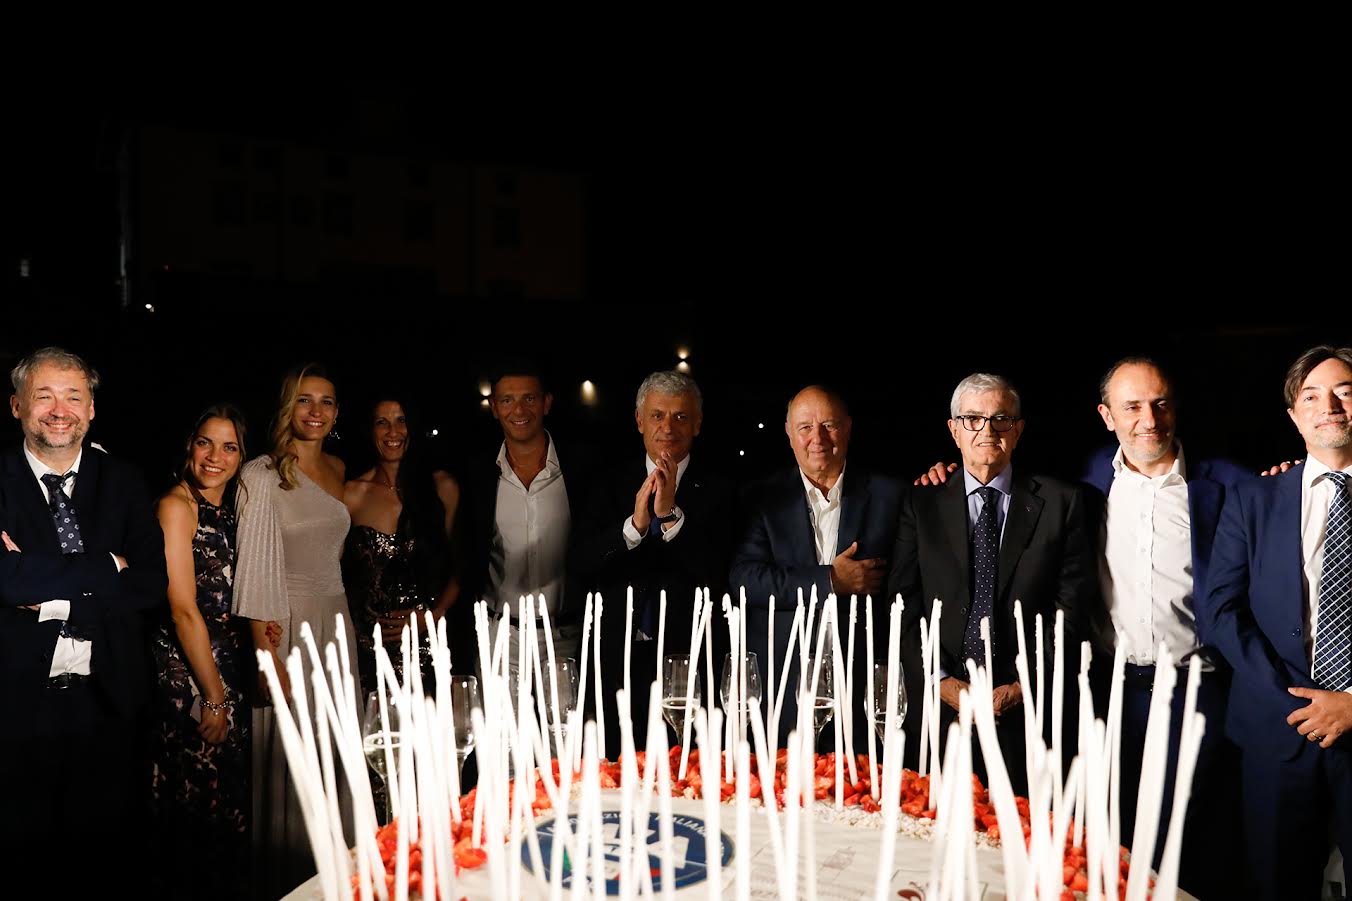 foto gruppo torta centenario firenze